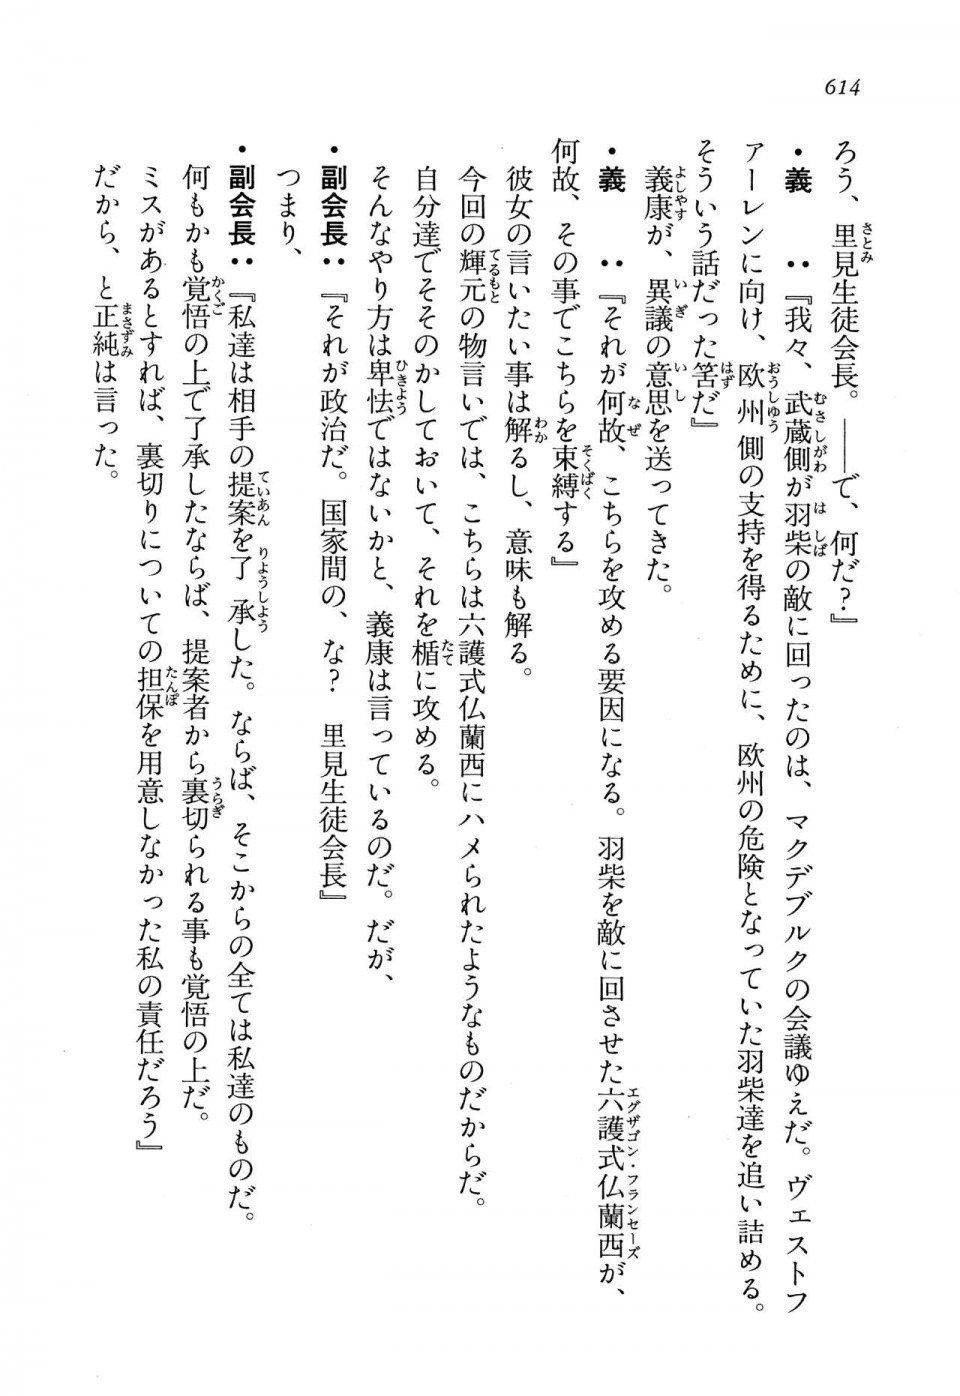 Kyoukai Senjou no Horizon LN Vol 13(6A) - Photo #614